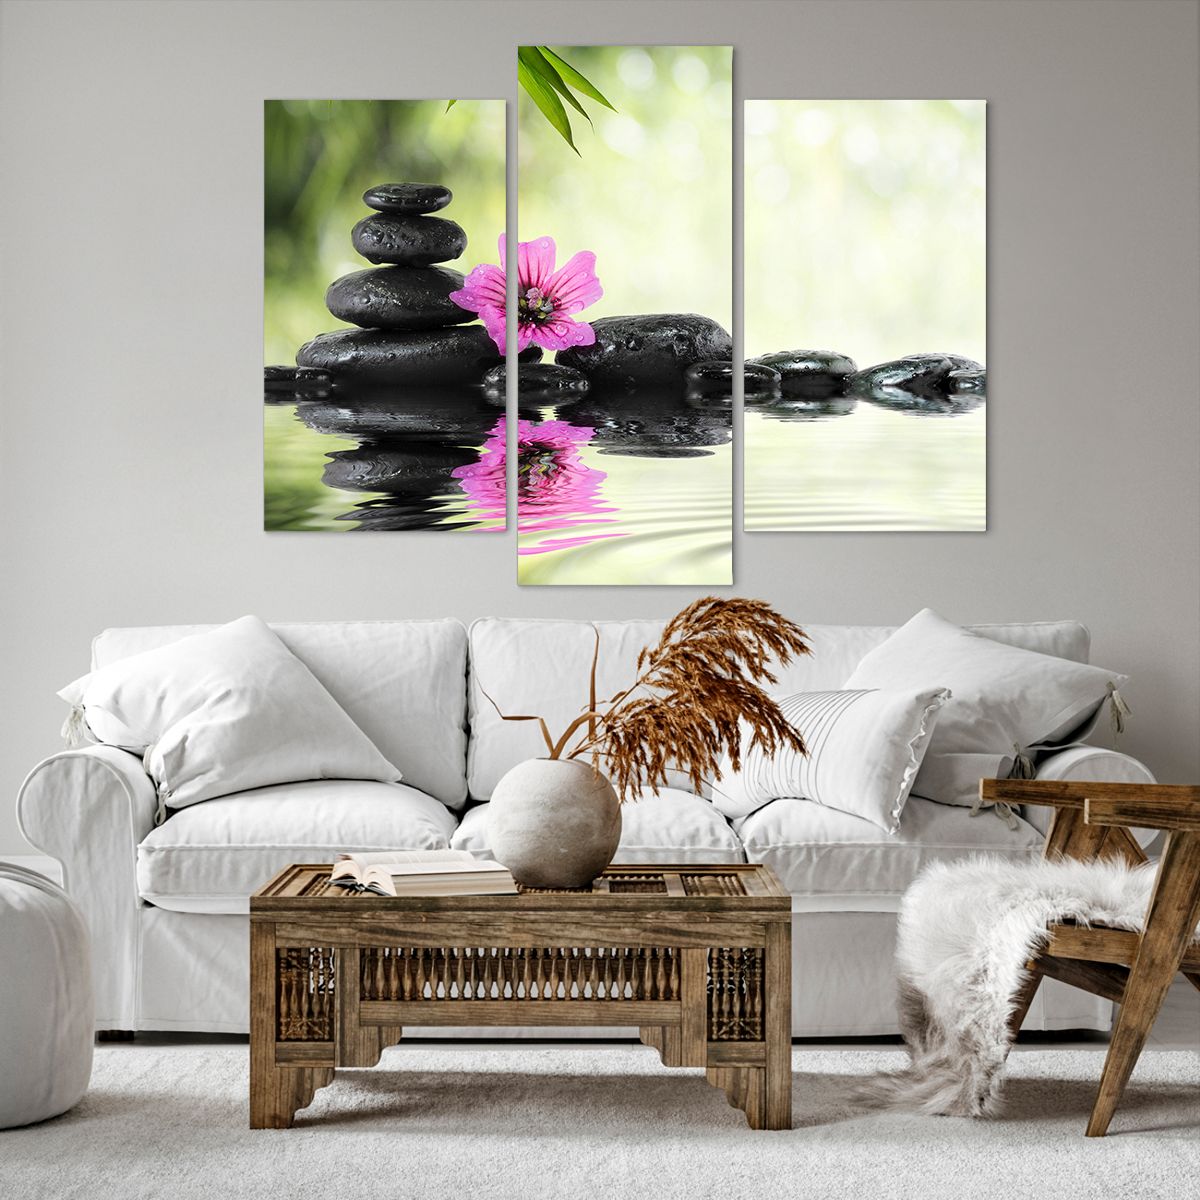 Bild auf Leinwand Blume, Bild auf Leinwand Kultur, Bild auf Leinwand Bambus, Bild auf Leinwand Asien, Bild auf Leinwand Spa